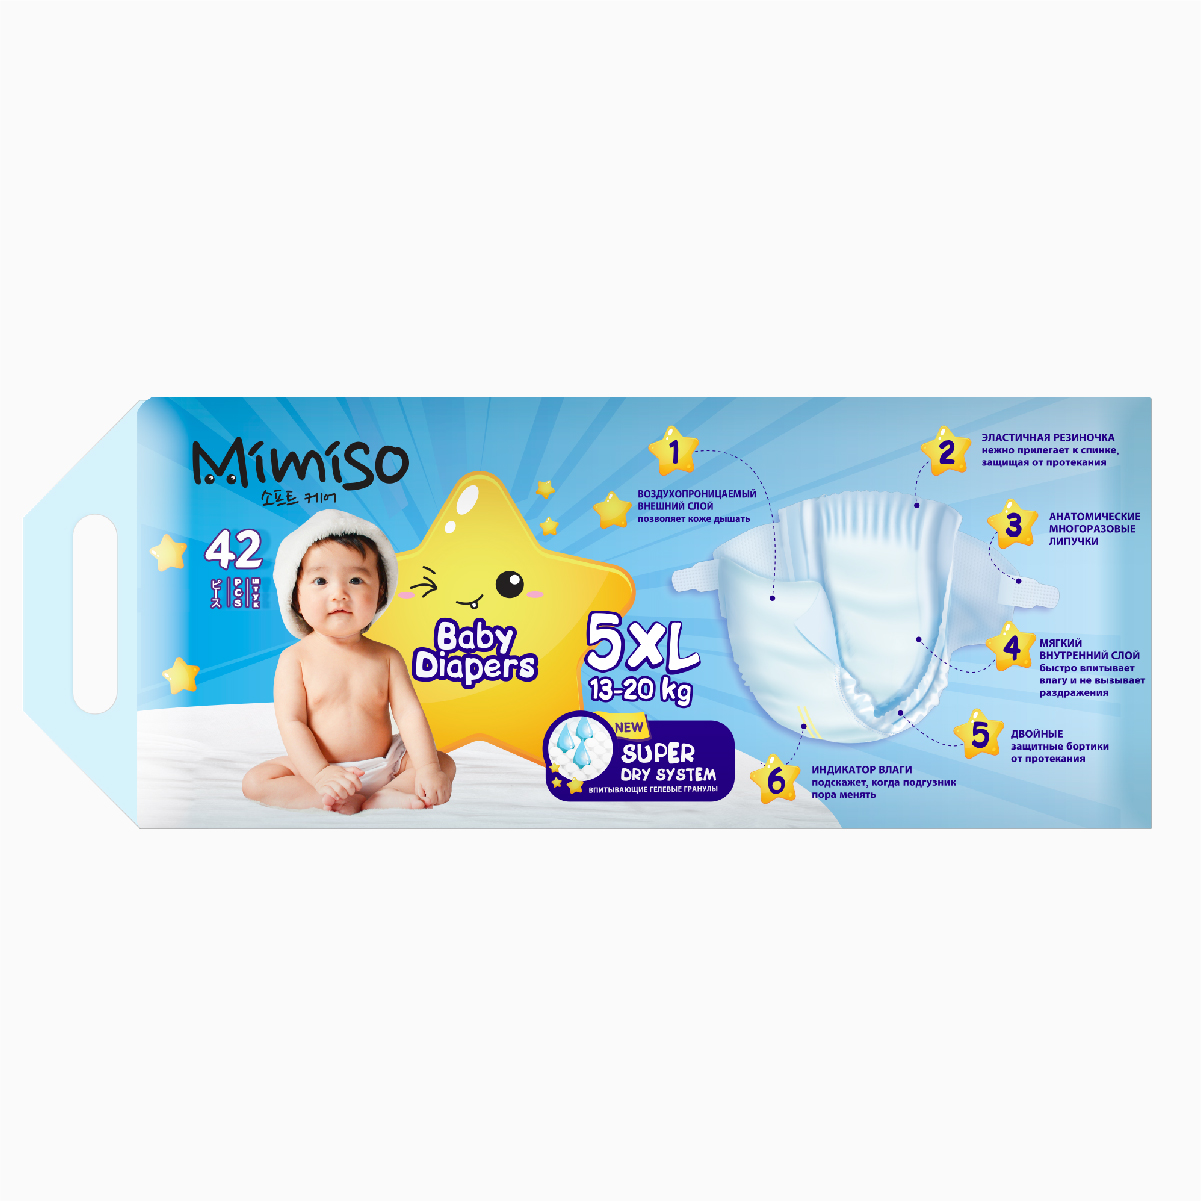 Подгузники Mimiso одноразовые для детей 5/XL 11-25 кг 42шт - фото 3